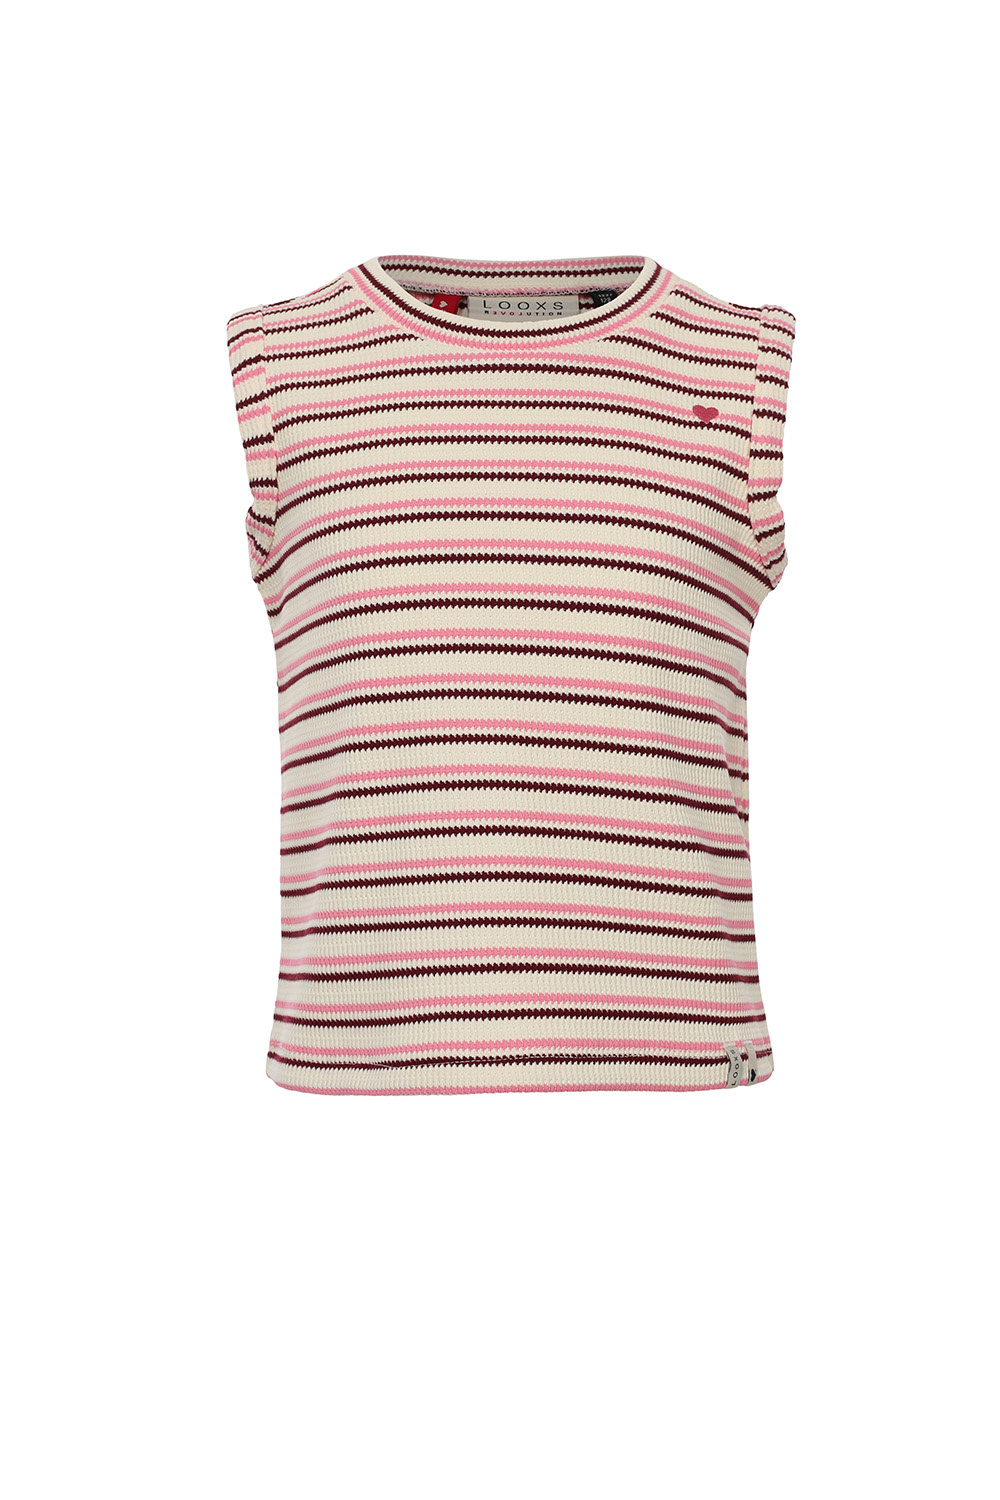 LOOXS Little 2412-7436-798 Meisjes Shirt - Maat 110 - Roze van 95% cotton 5% ea